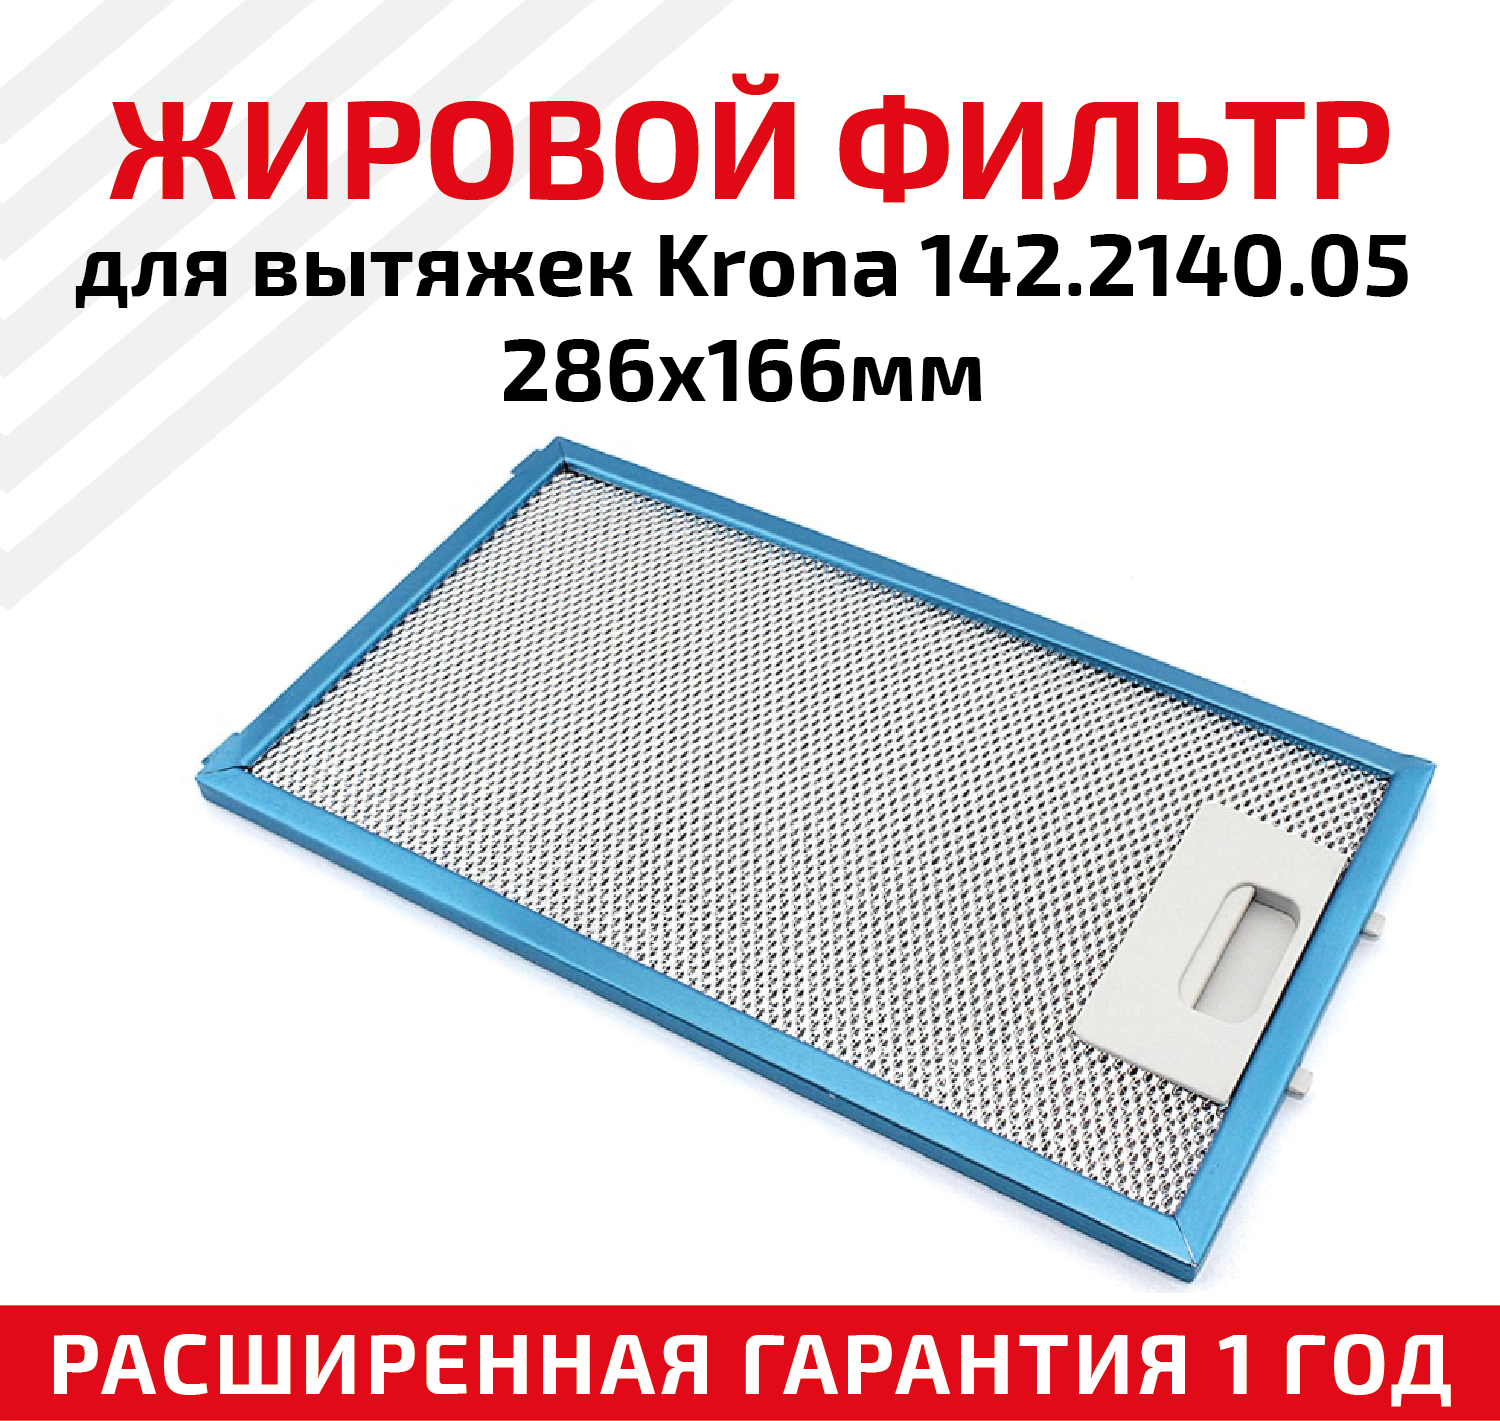 Жировой фильтр (кассета) алюминиевый (металлический) рамочный для кухонных вытяжек Krona 142.2140.05, многоразовый, 286х166мм